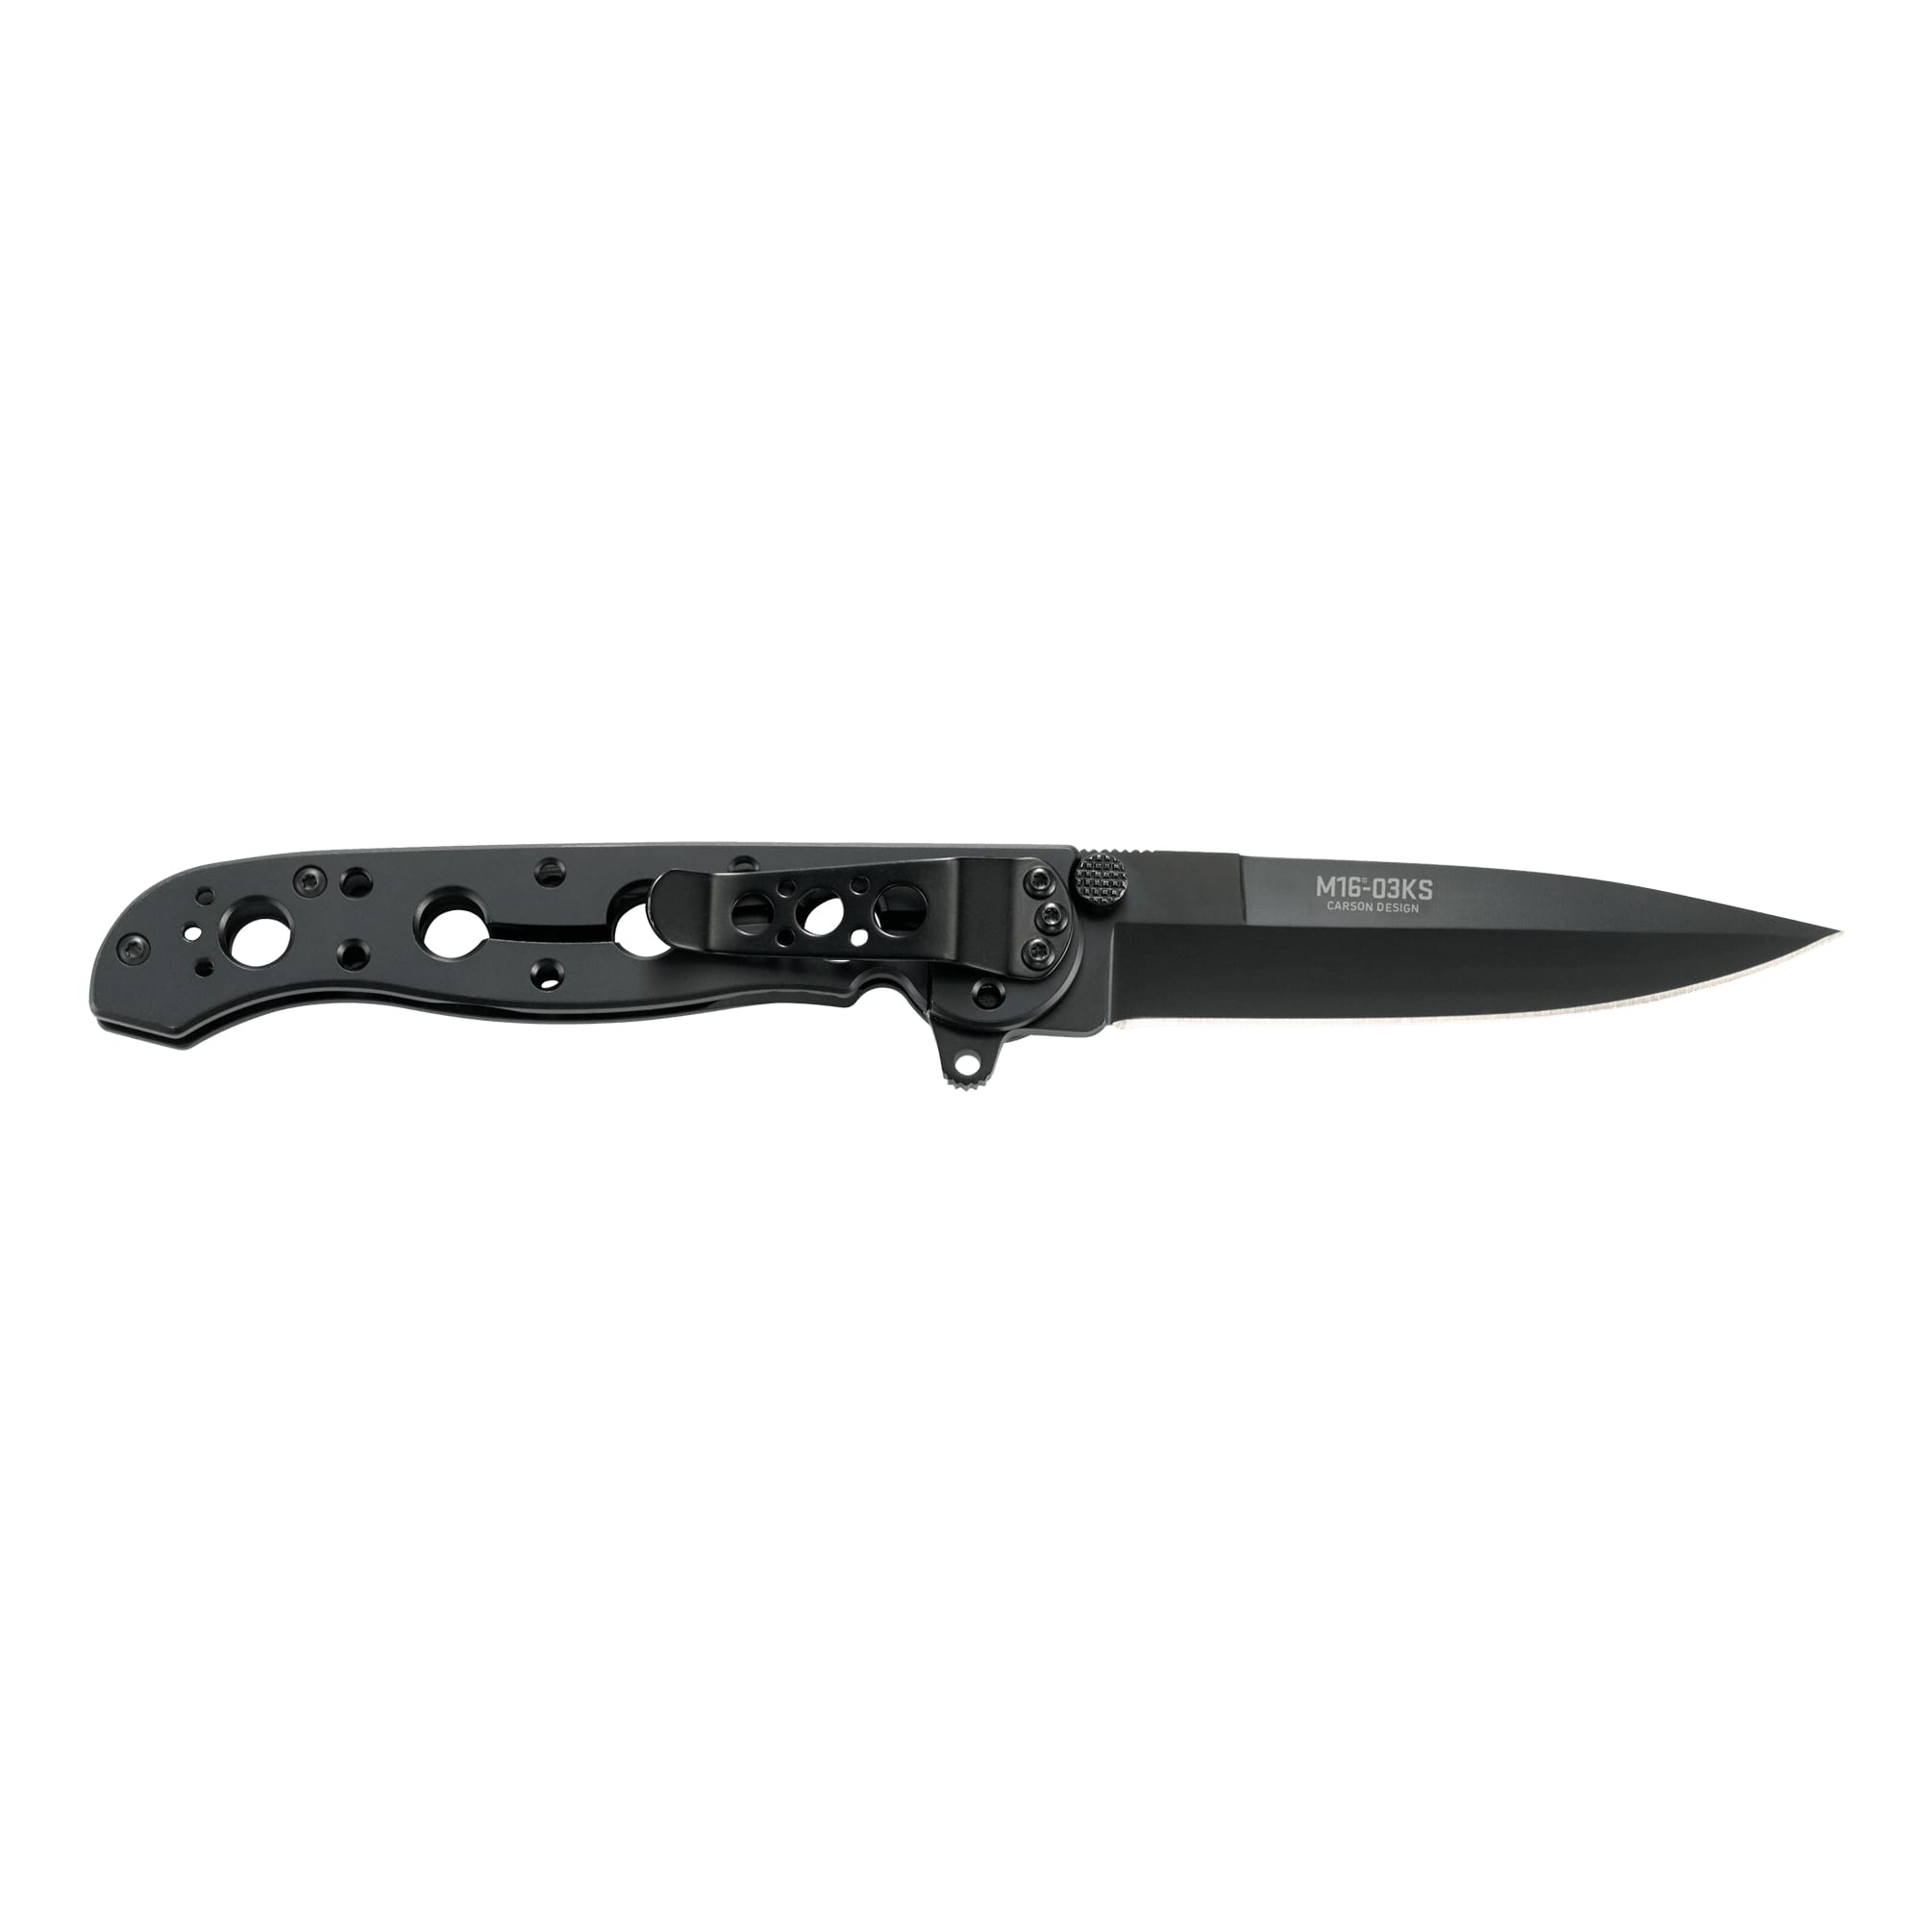 CRKT® M16®-03KS Folding Knife - Opposite View